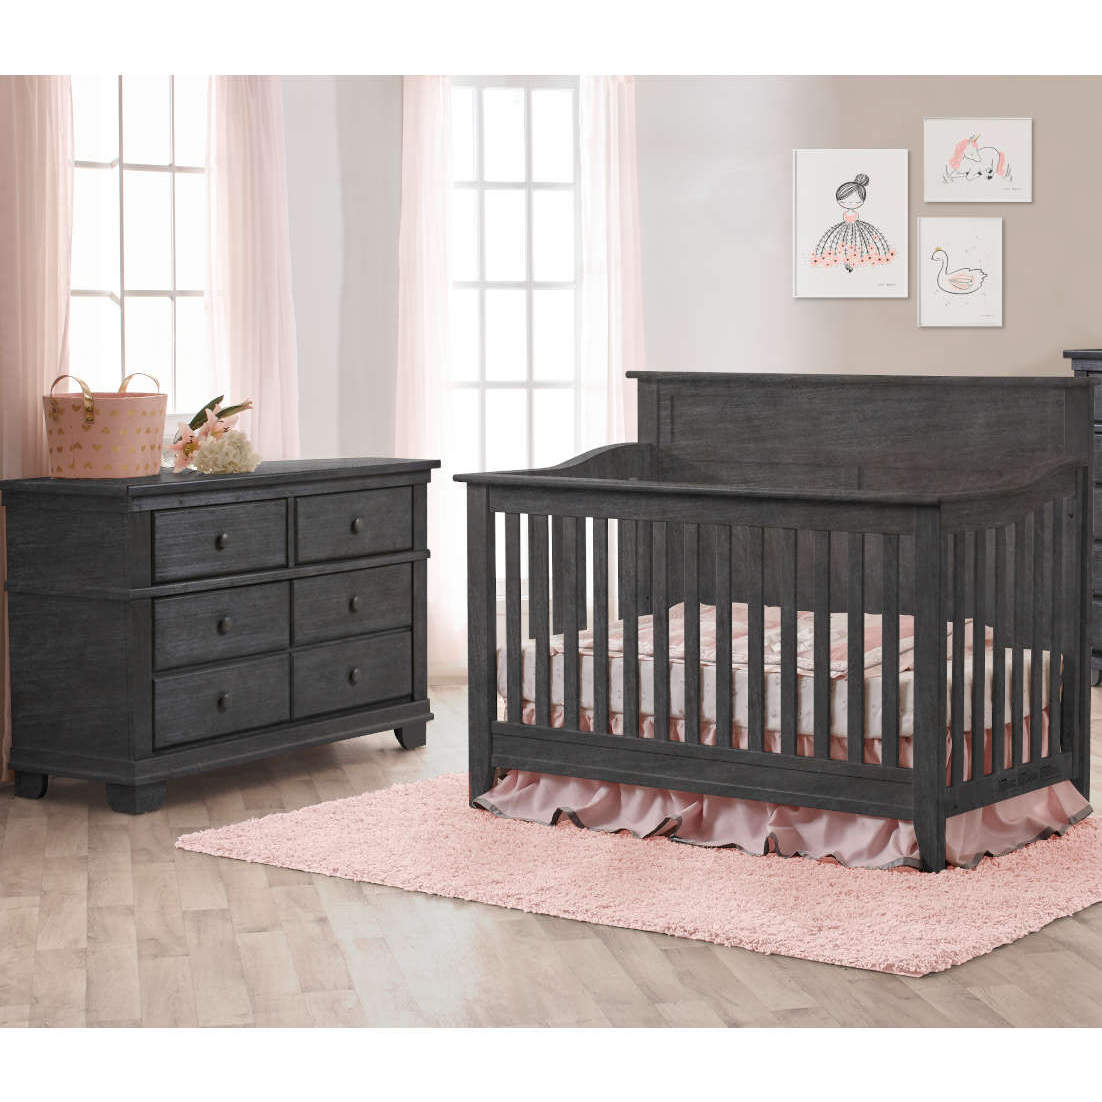 Pali Potenza Flat Top Crib + Double Dresser - Twinkle Twinkle Little One